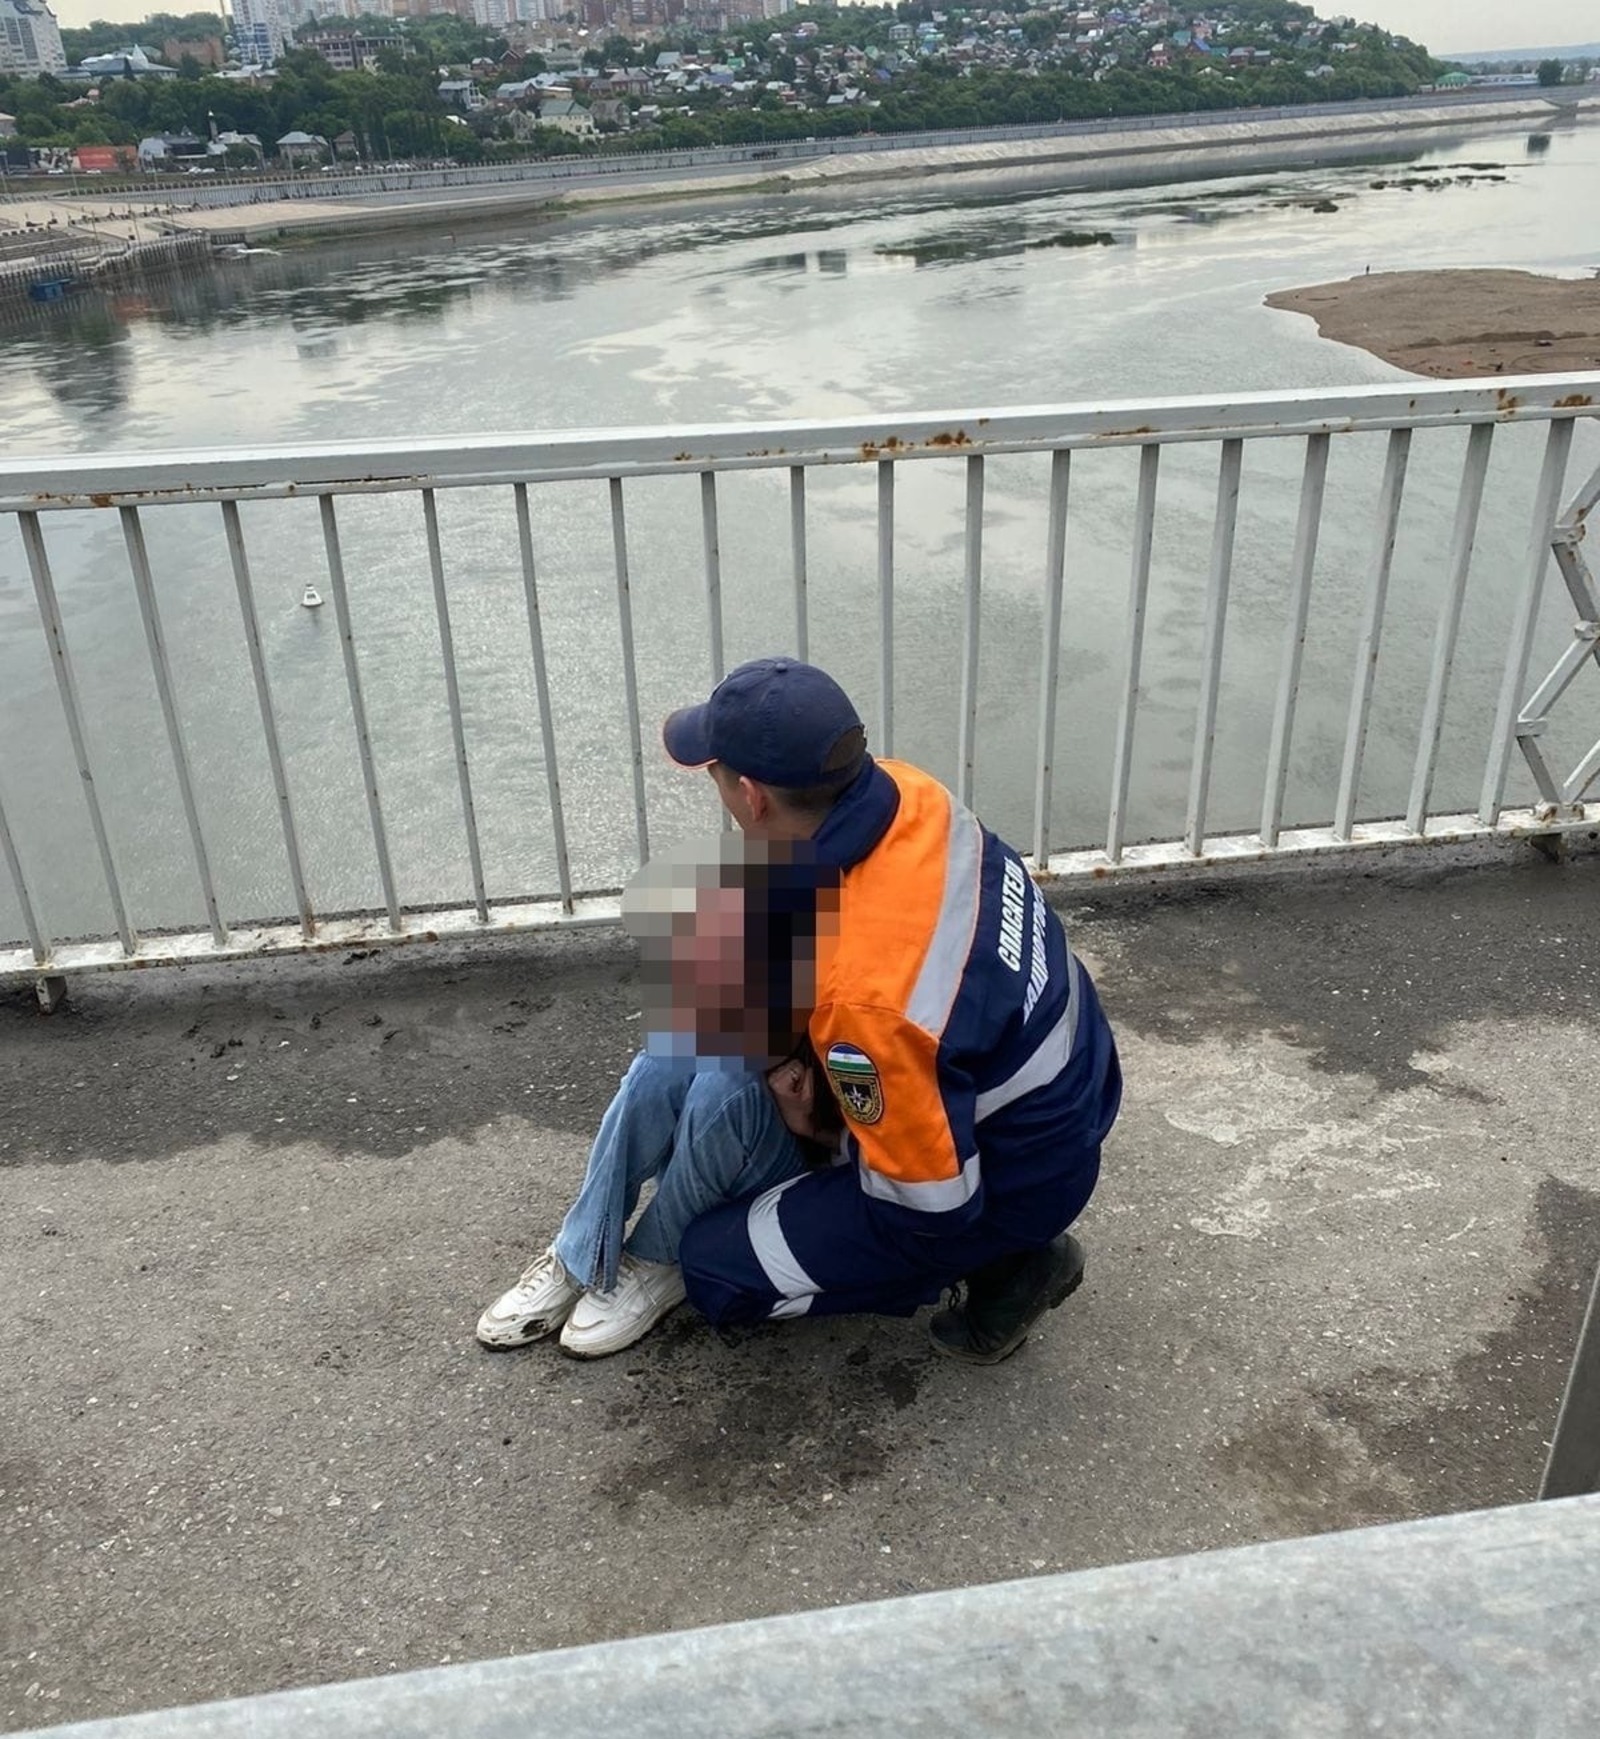 В Башкирии спасатели вовремя оказались на Бельском мосту и спасли девушку